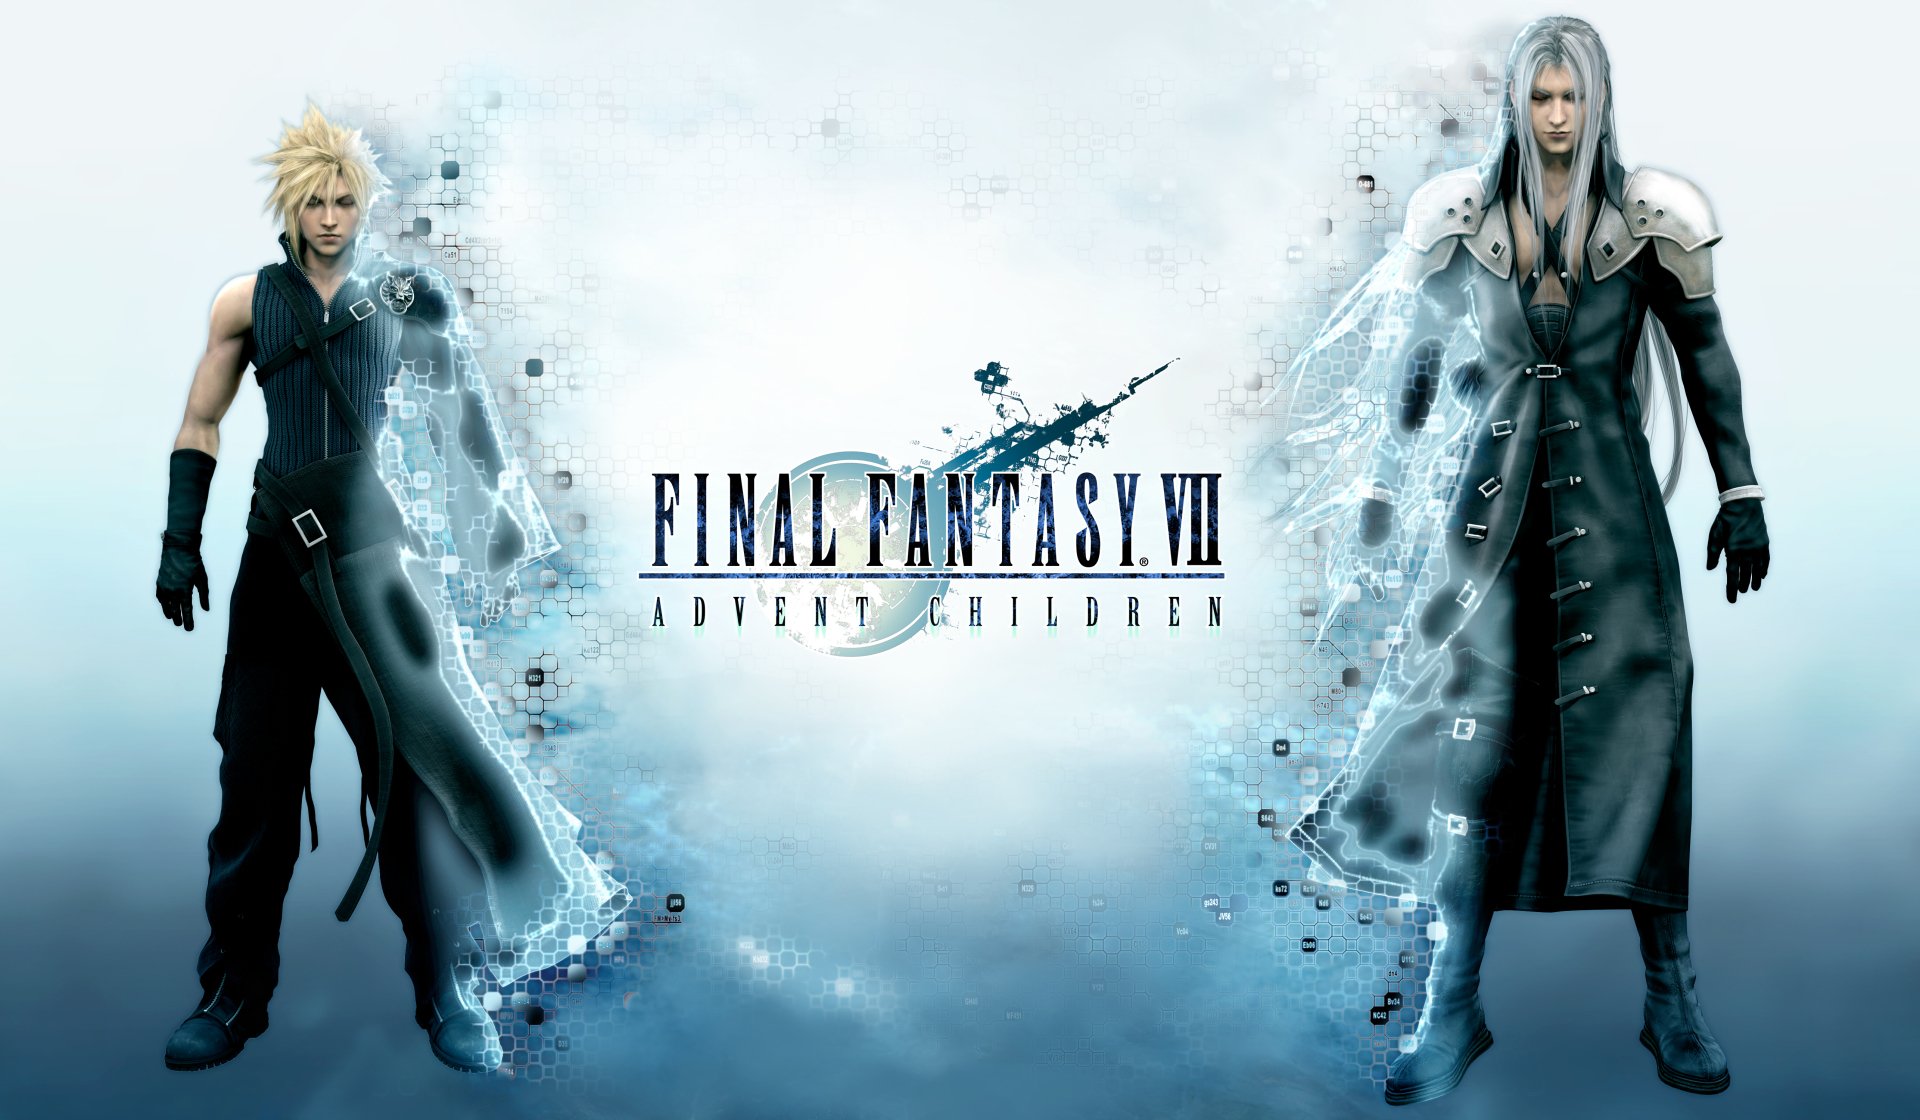 Final Fantasy VII Rebirth: uma entrevista com a equipe de